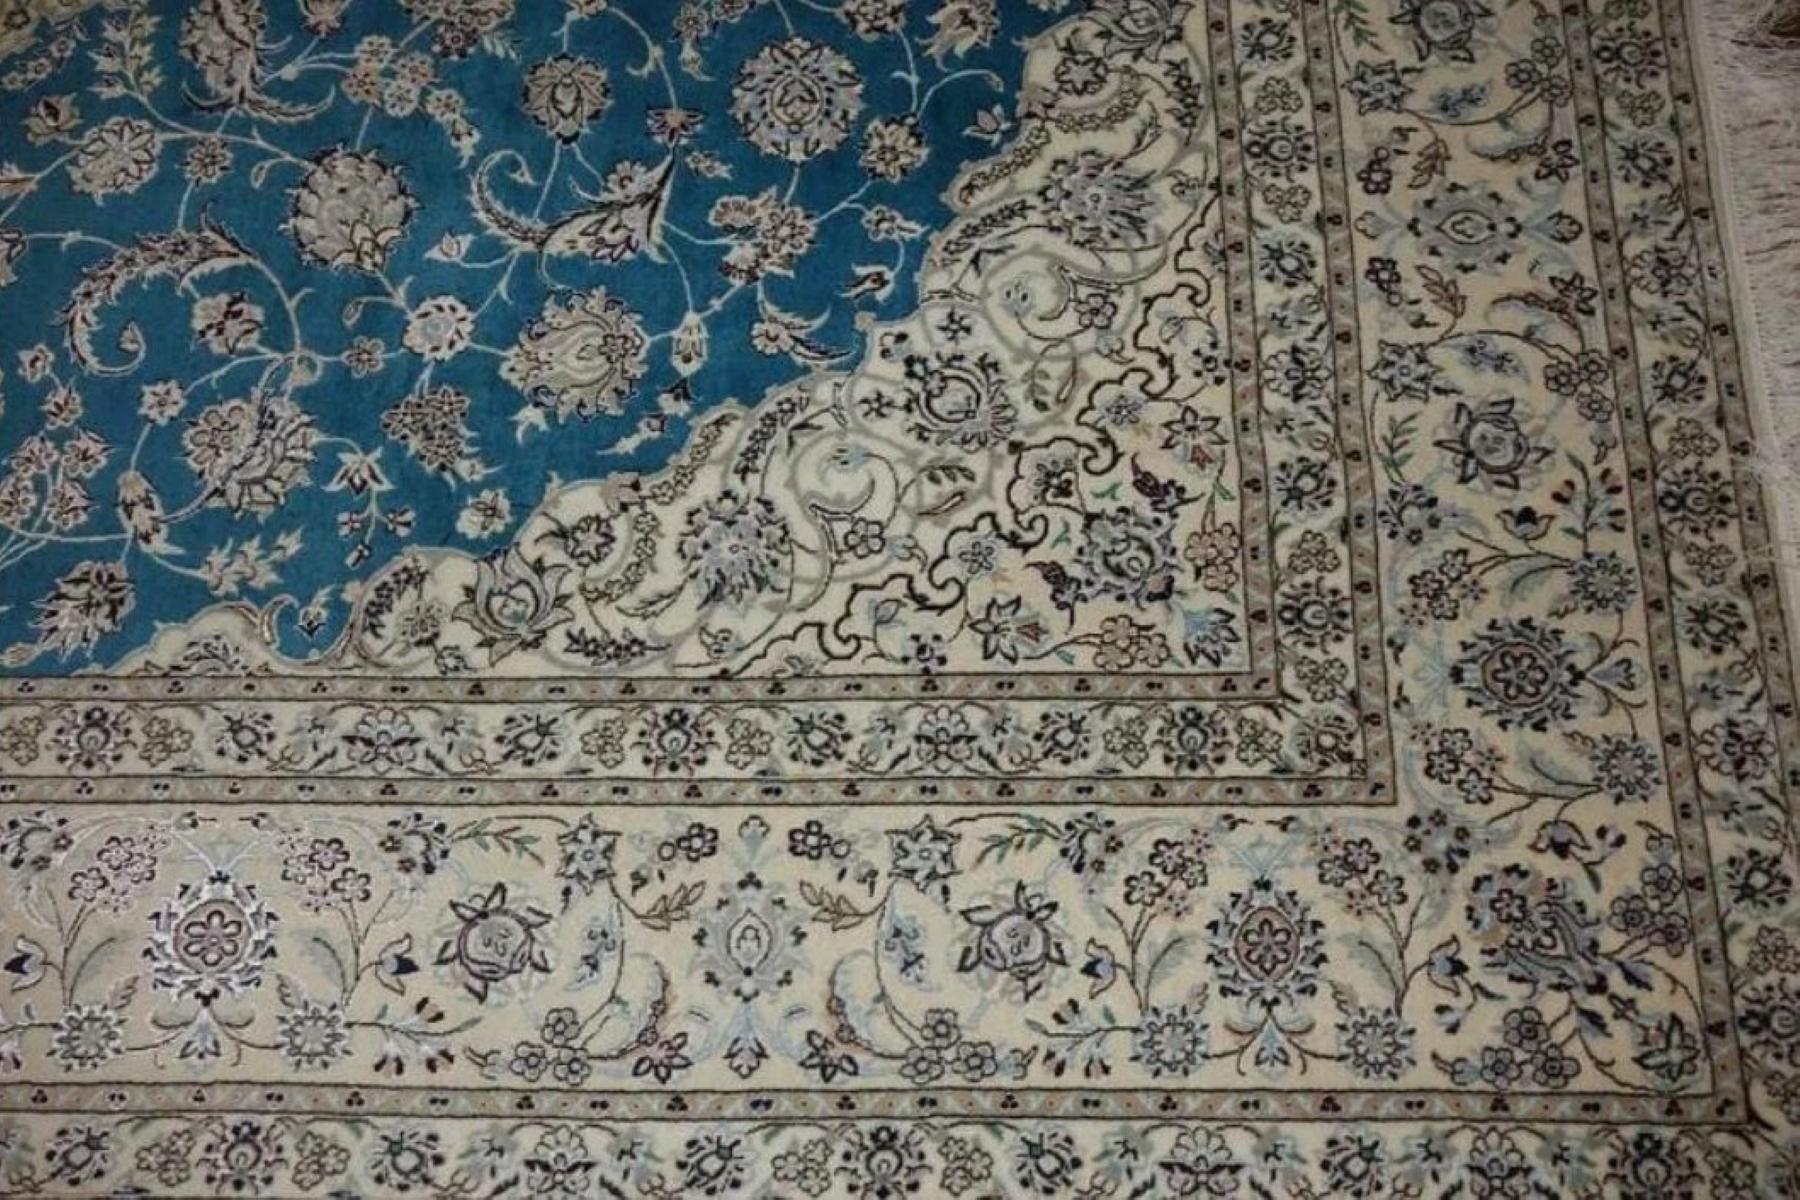 Très beau tapis persan Nain 500 noeuds par pouce, Taille 10.5 x 7.2 Iran Nain Habbibian Laine et Soie. Environ 5 000 000 de nœuds noués à la main, un par un. Il faut 3 ans pour réaliser cette œuvre d'art.